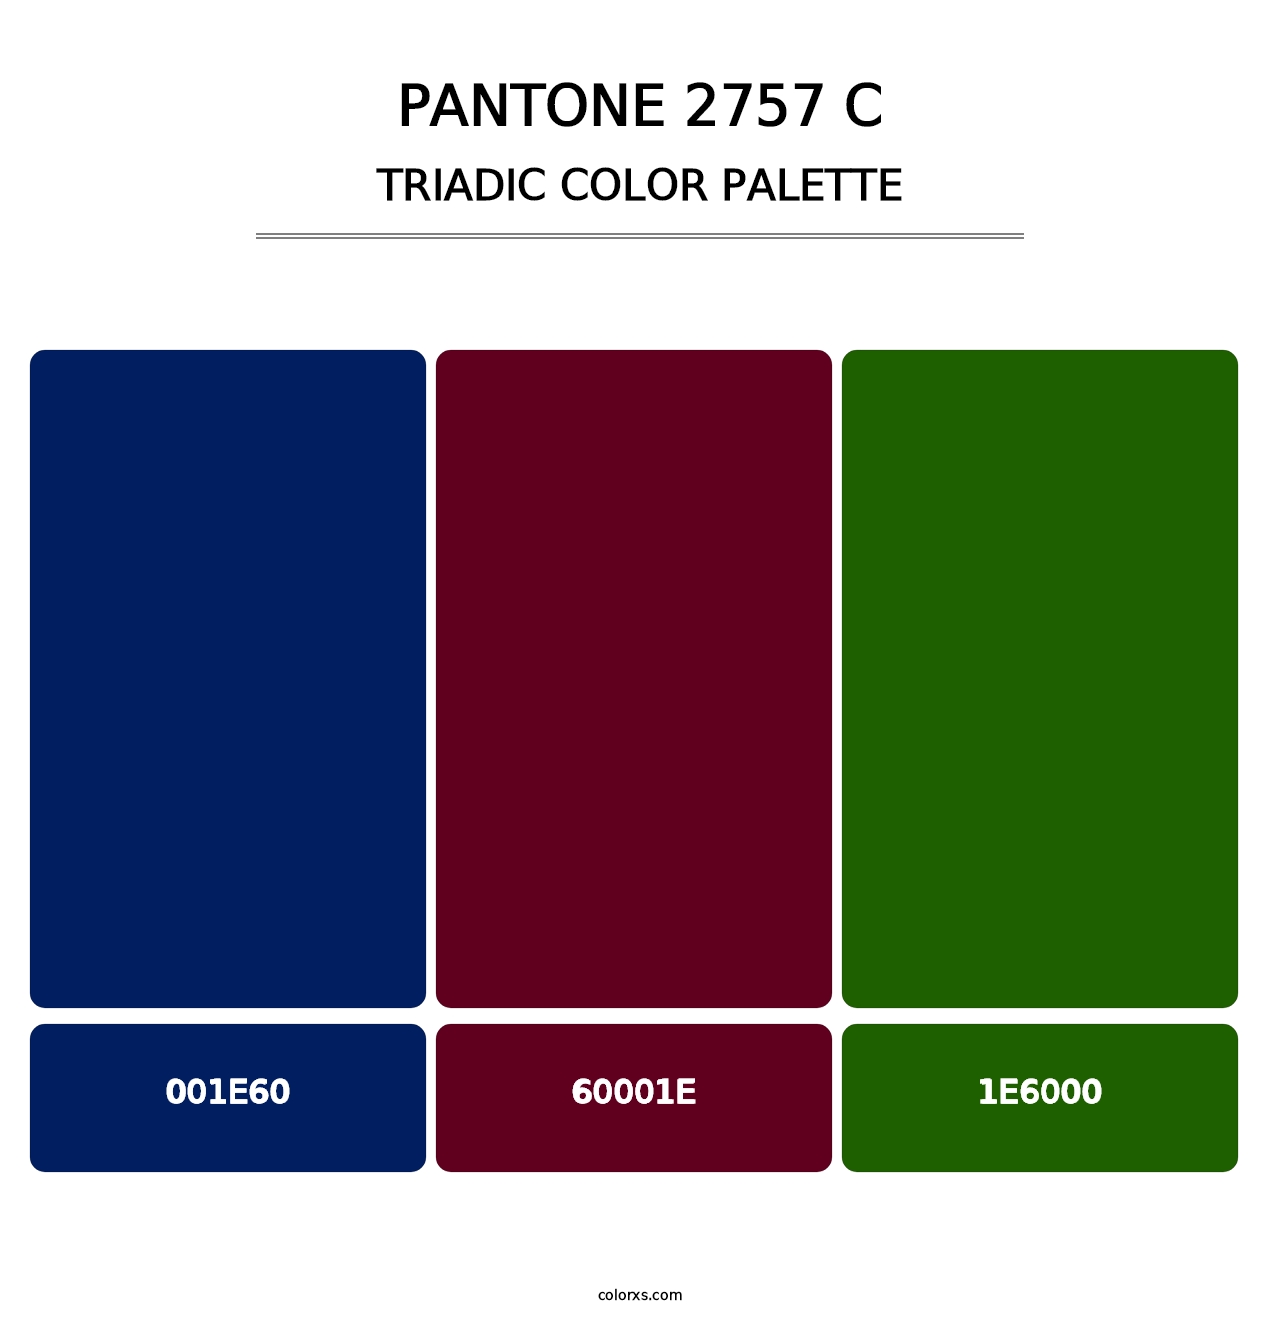 PANTONE 2757 C - Triadic Color Palette